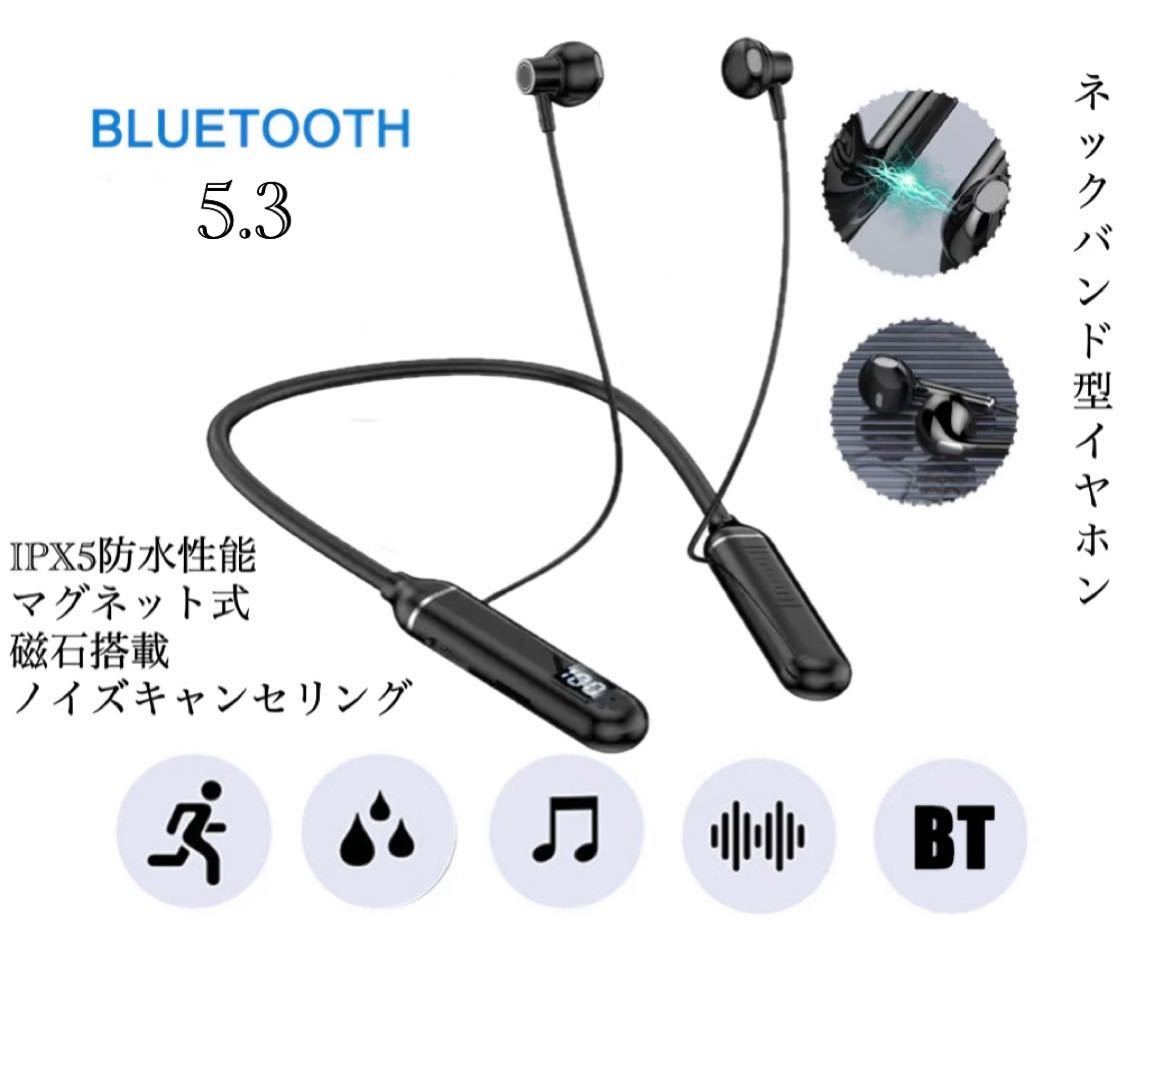 イヤホン ワイヤレスイヤホ Bluetooth 5.3 IPX5 ネックバンド型イヤホン 首掛け スポーツ防水 ノイズキャンセリング マイク 両耳 1_画像1